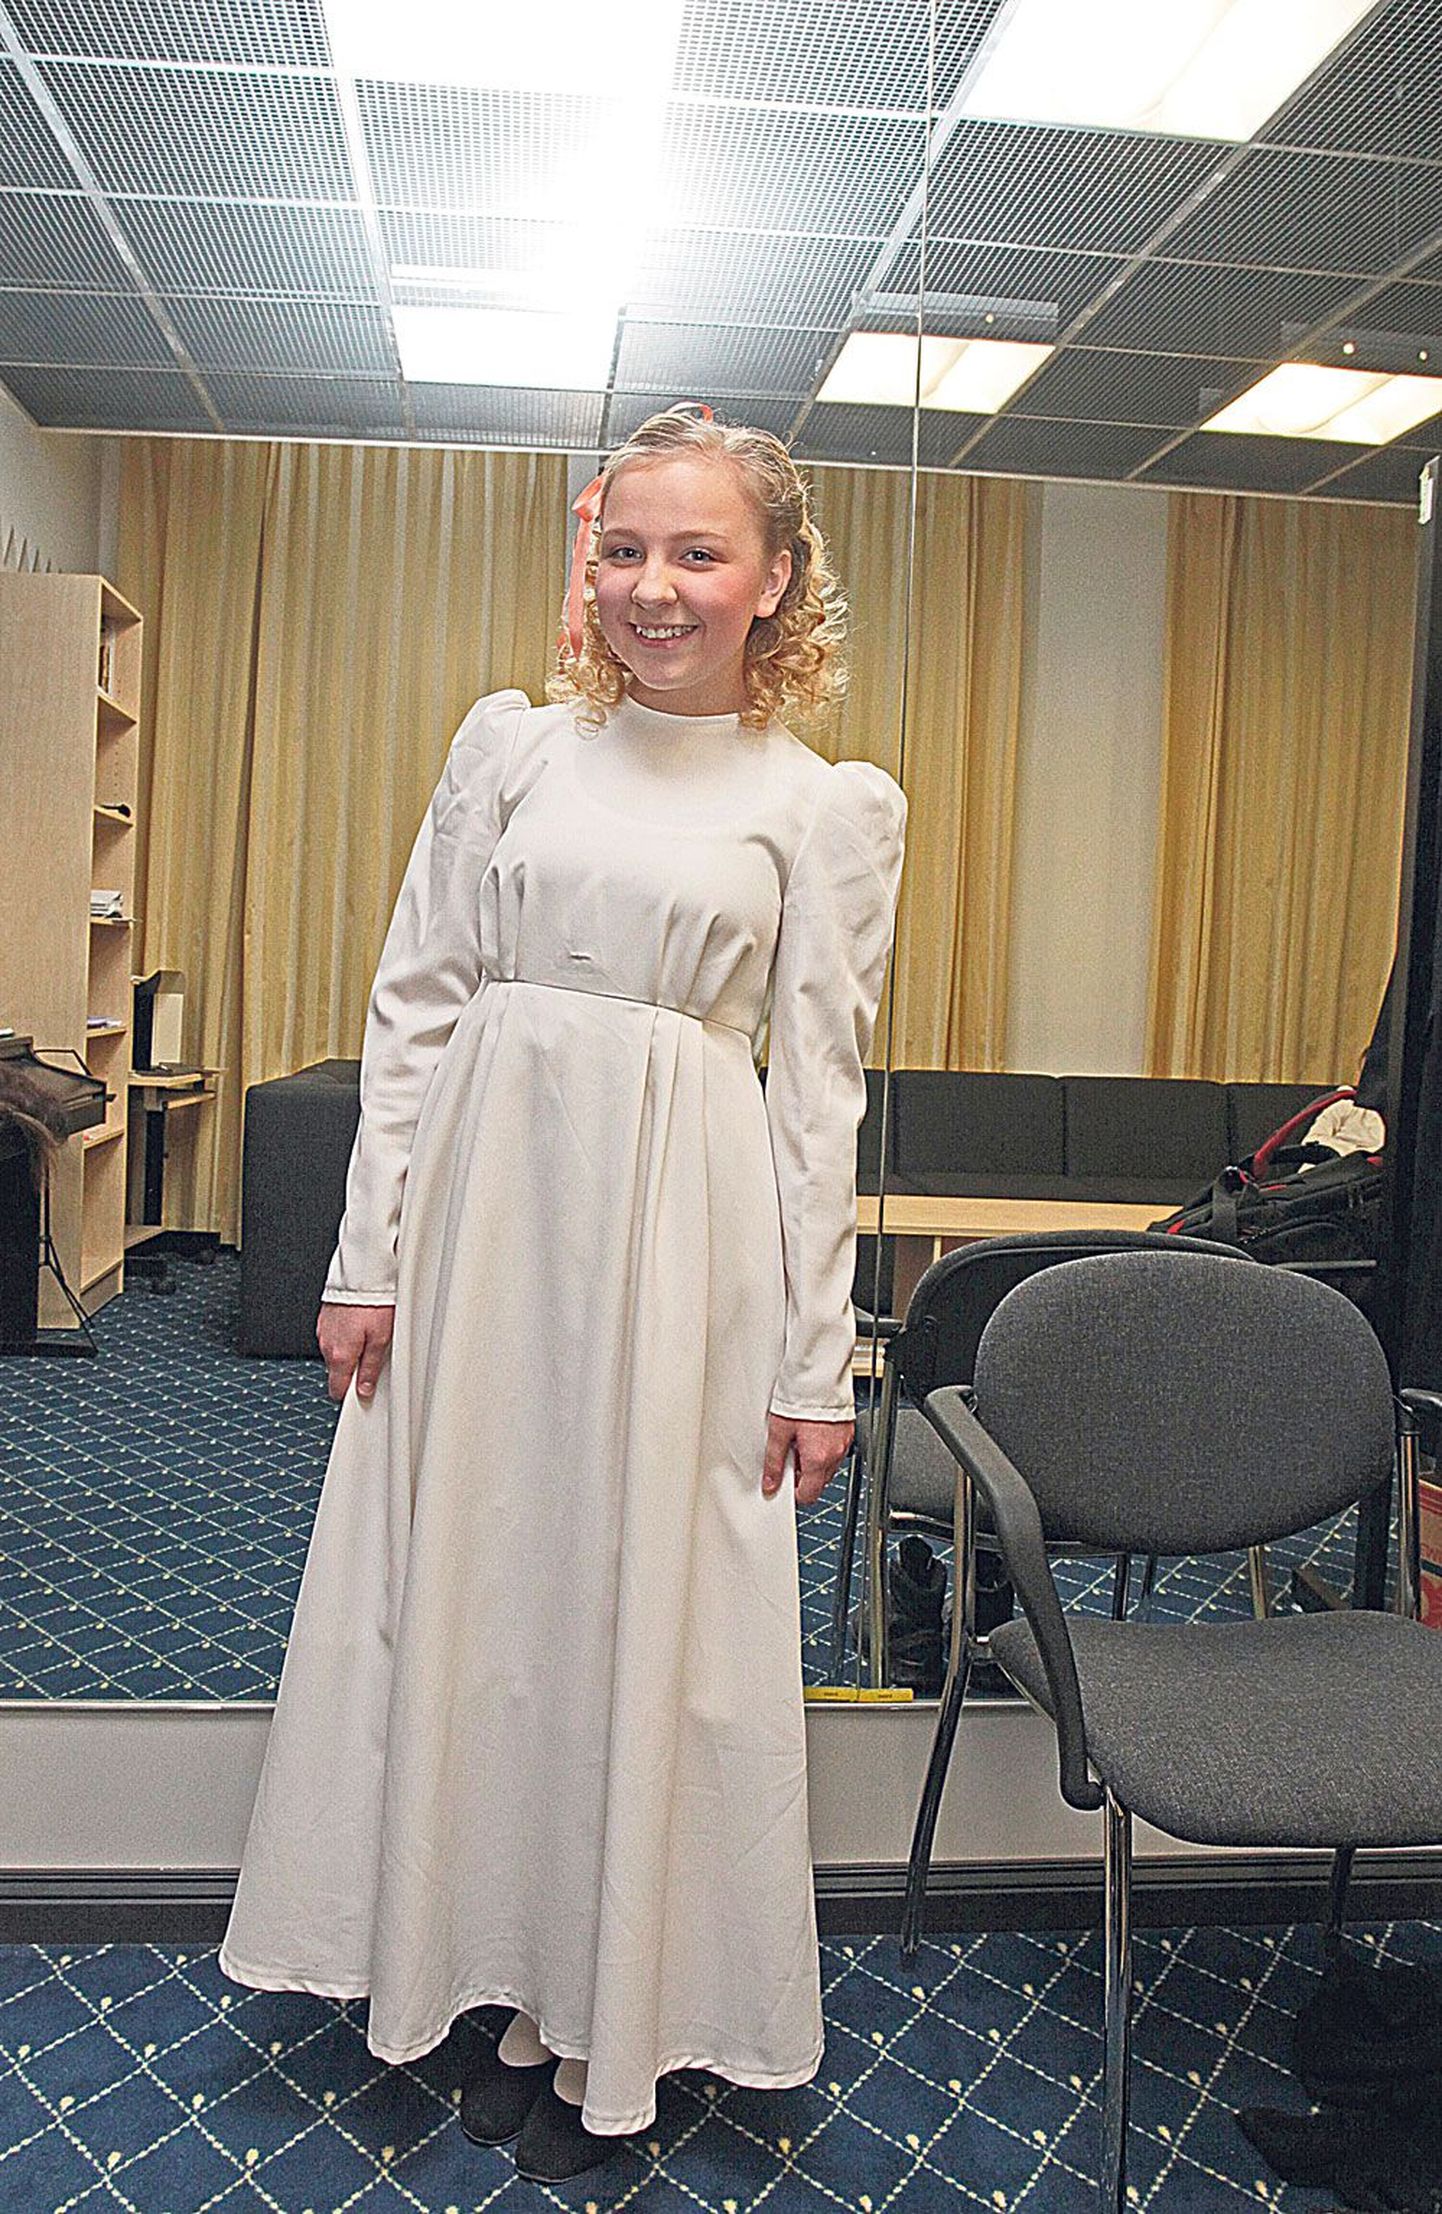 13-aastane Kristiina Raahel Uiga on osalenud kuues Vanemuise lavastuses. Neist viimane on «Fanny ja Alexander», kus ta mängib peretütar Fannyt.